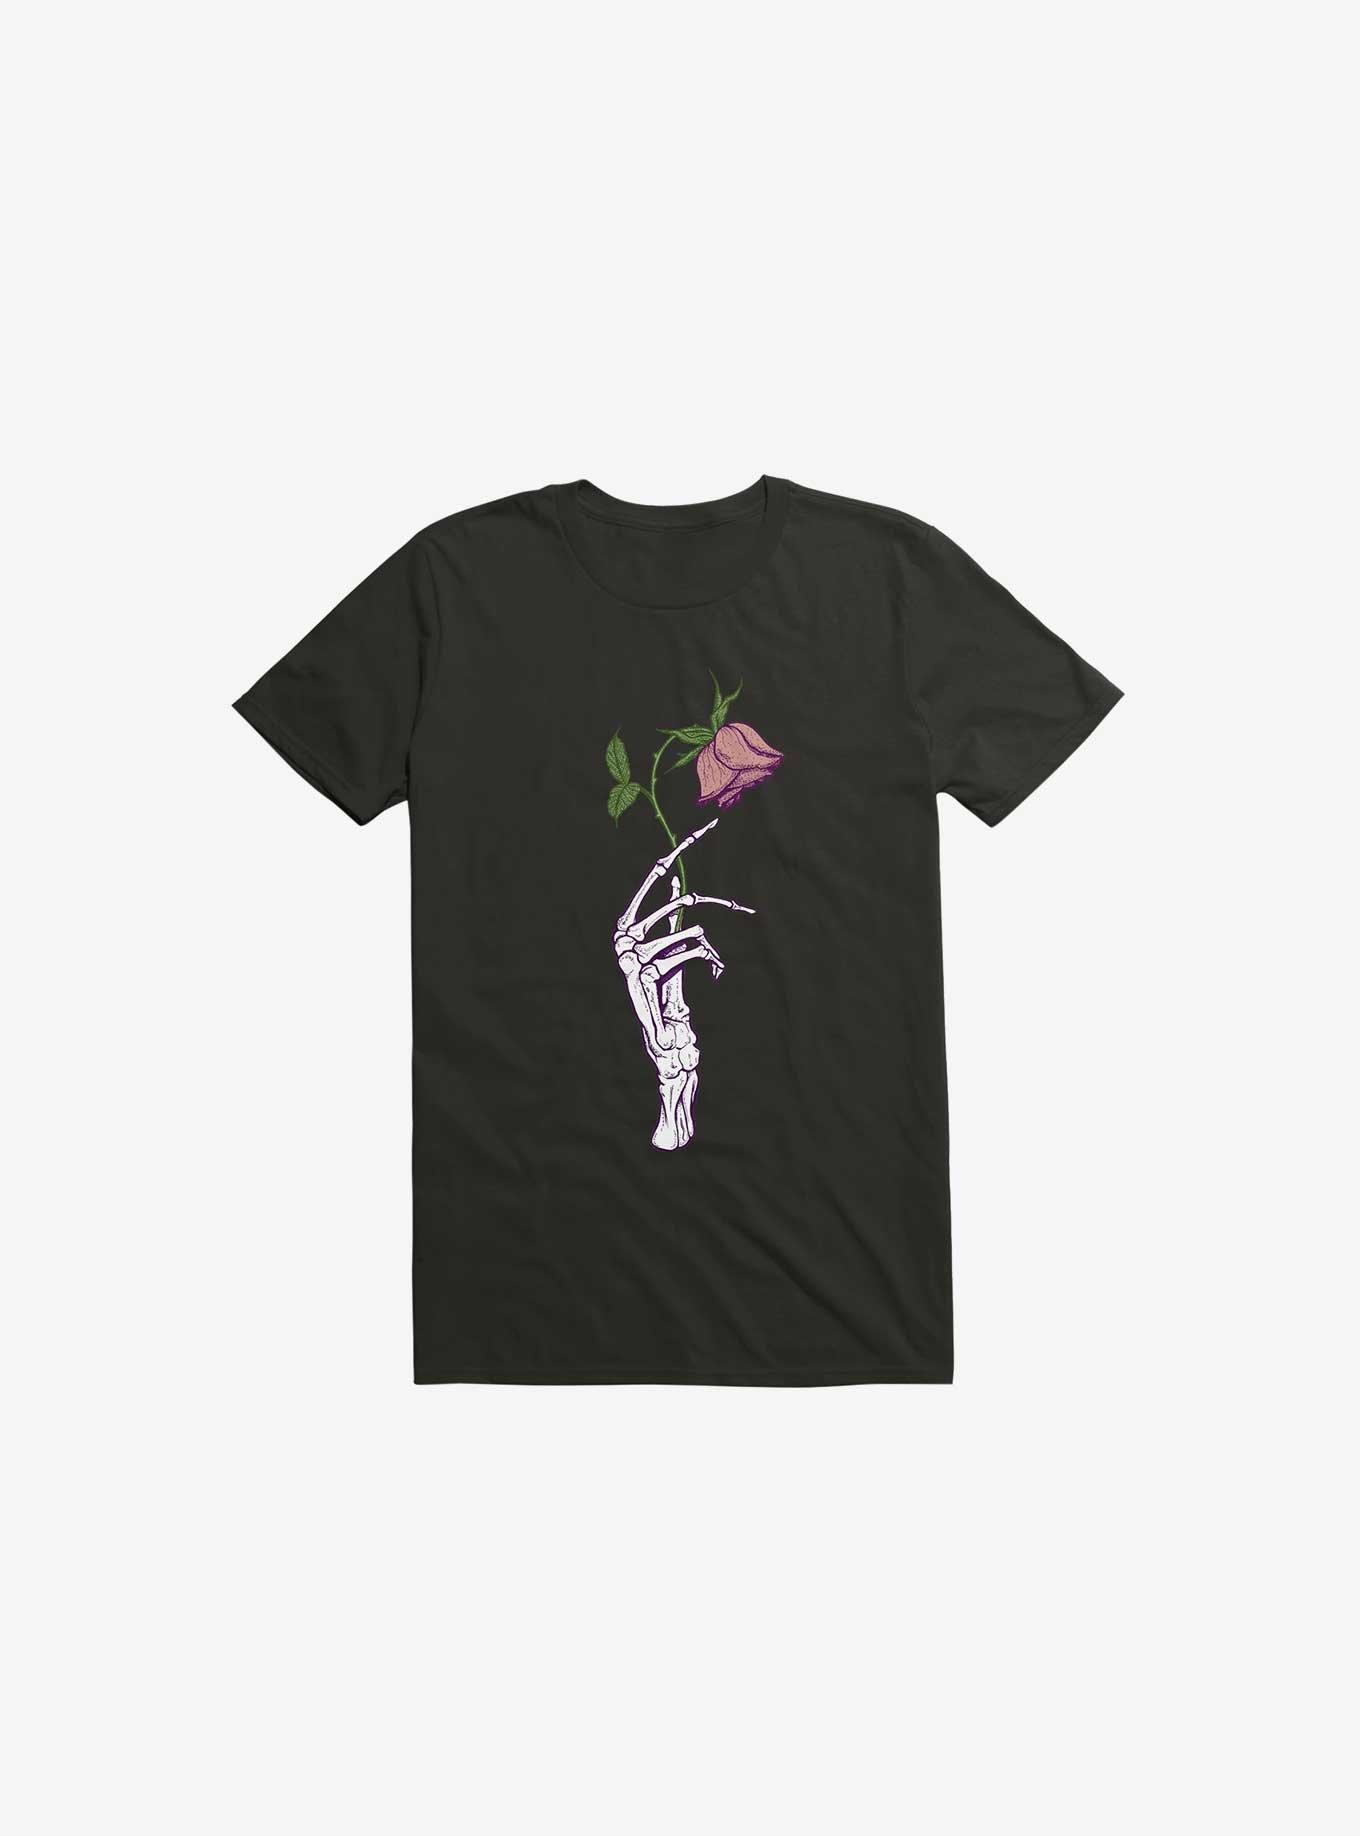 The Dead Rose Skeleton Hand T-Shirt